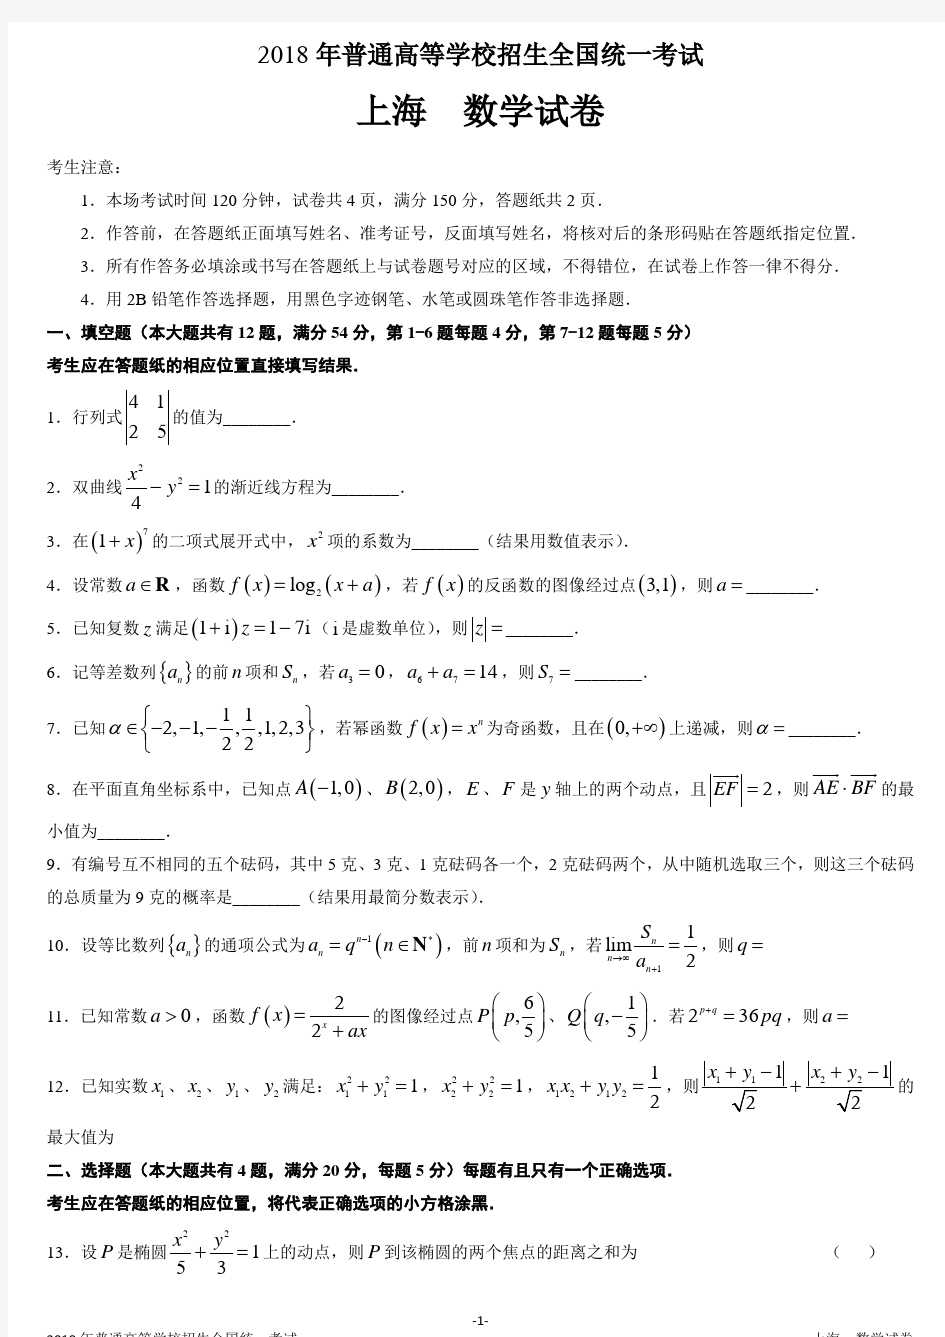 上海市高考数学真题.pdf